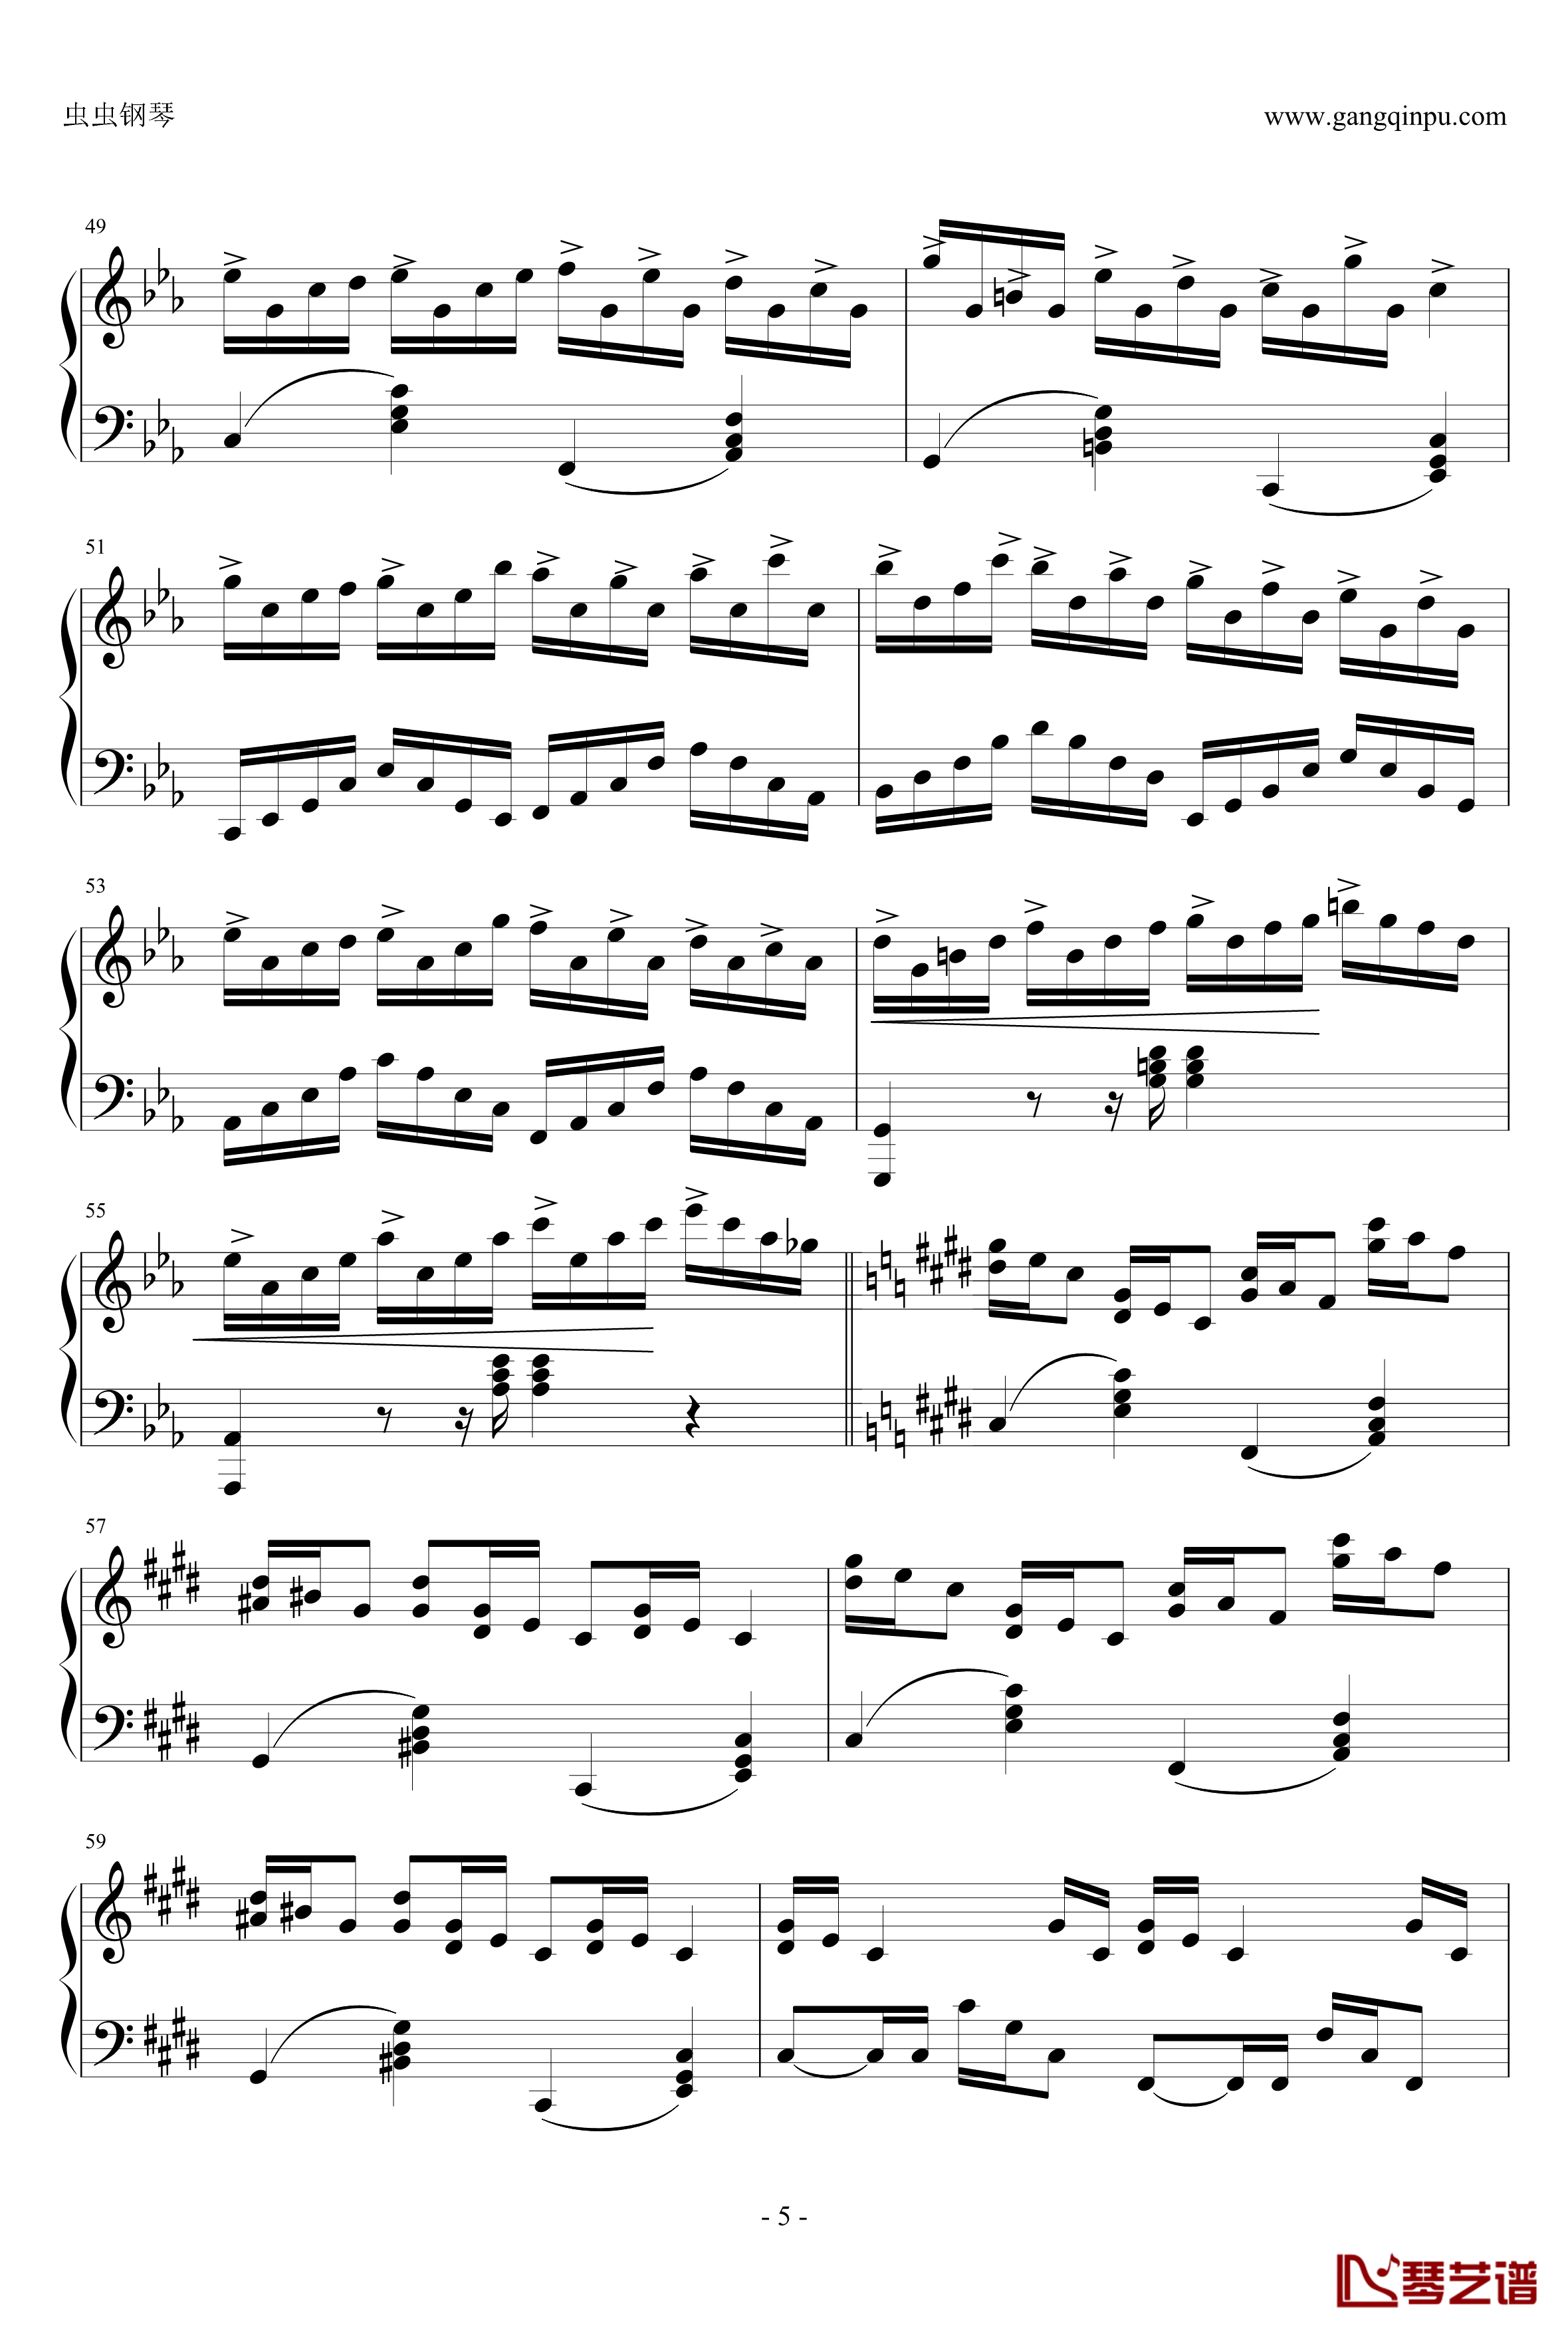 克罗地亚狂想曲钢琴谱-完美版-马克西姆-Maksim·Mrvica5